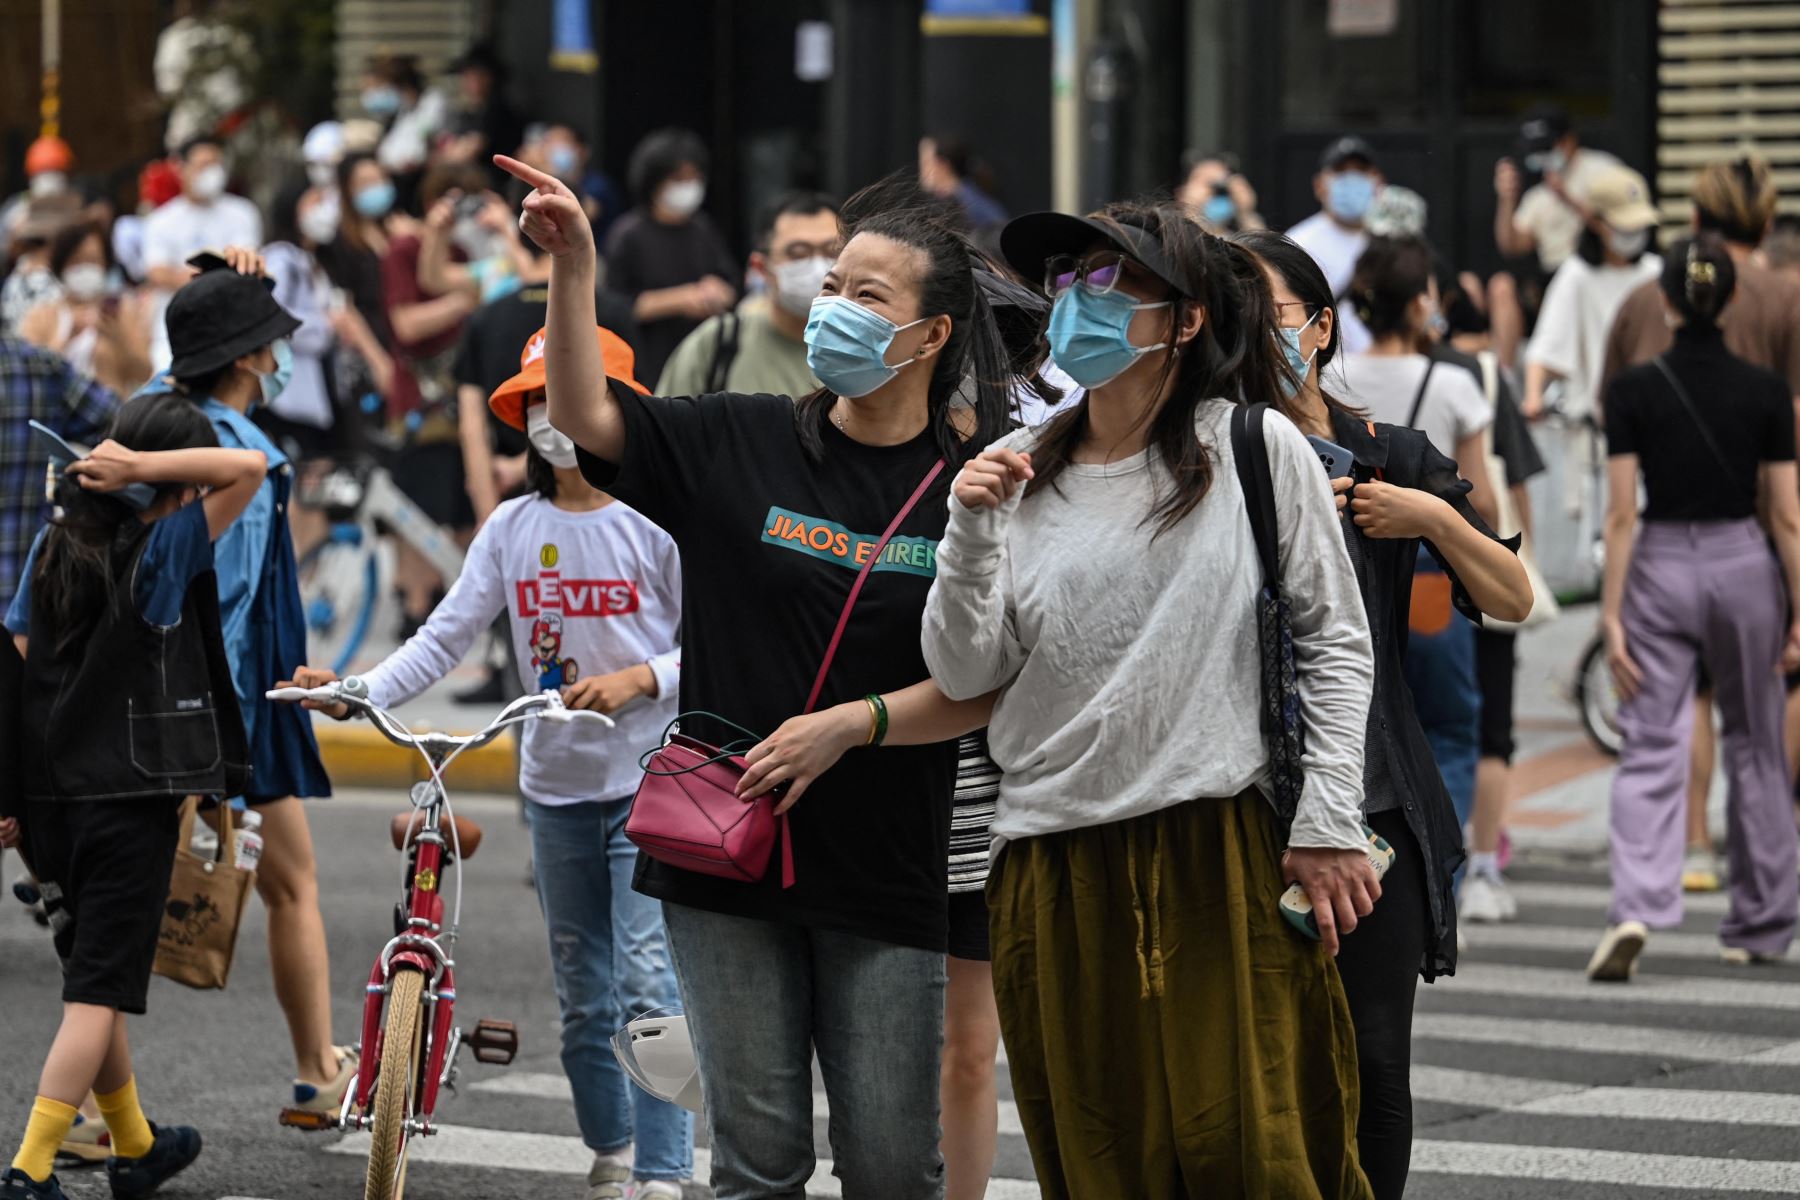 Las personas con un pase de dos o tres horas de sus complejos residenciales caminan por una calle durante un bloqueo de coronavirus Covid-19 en el distrito de Jing